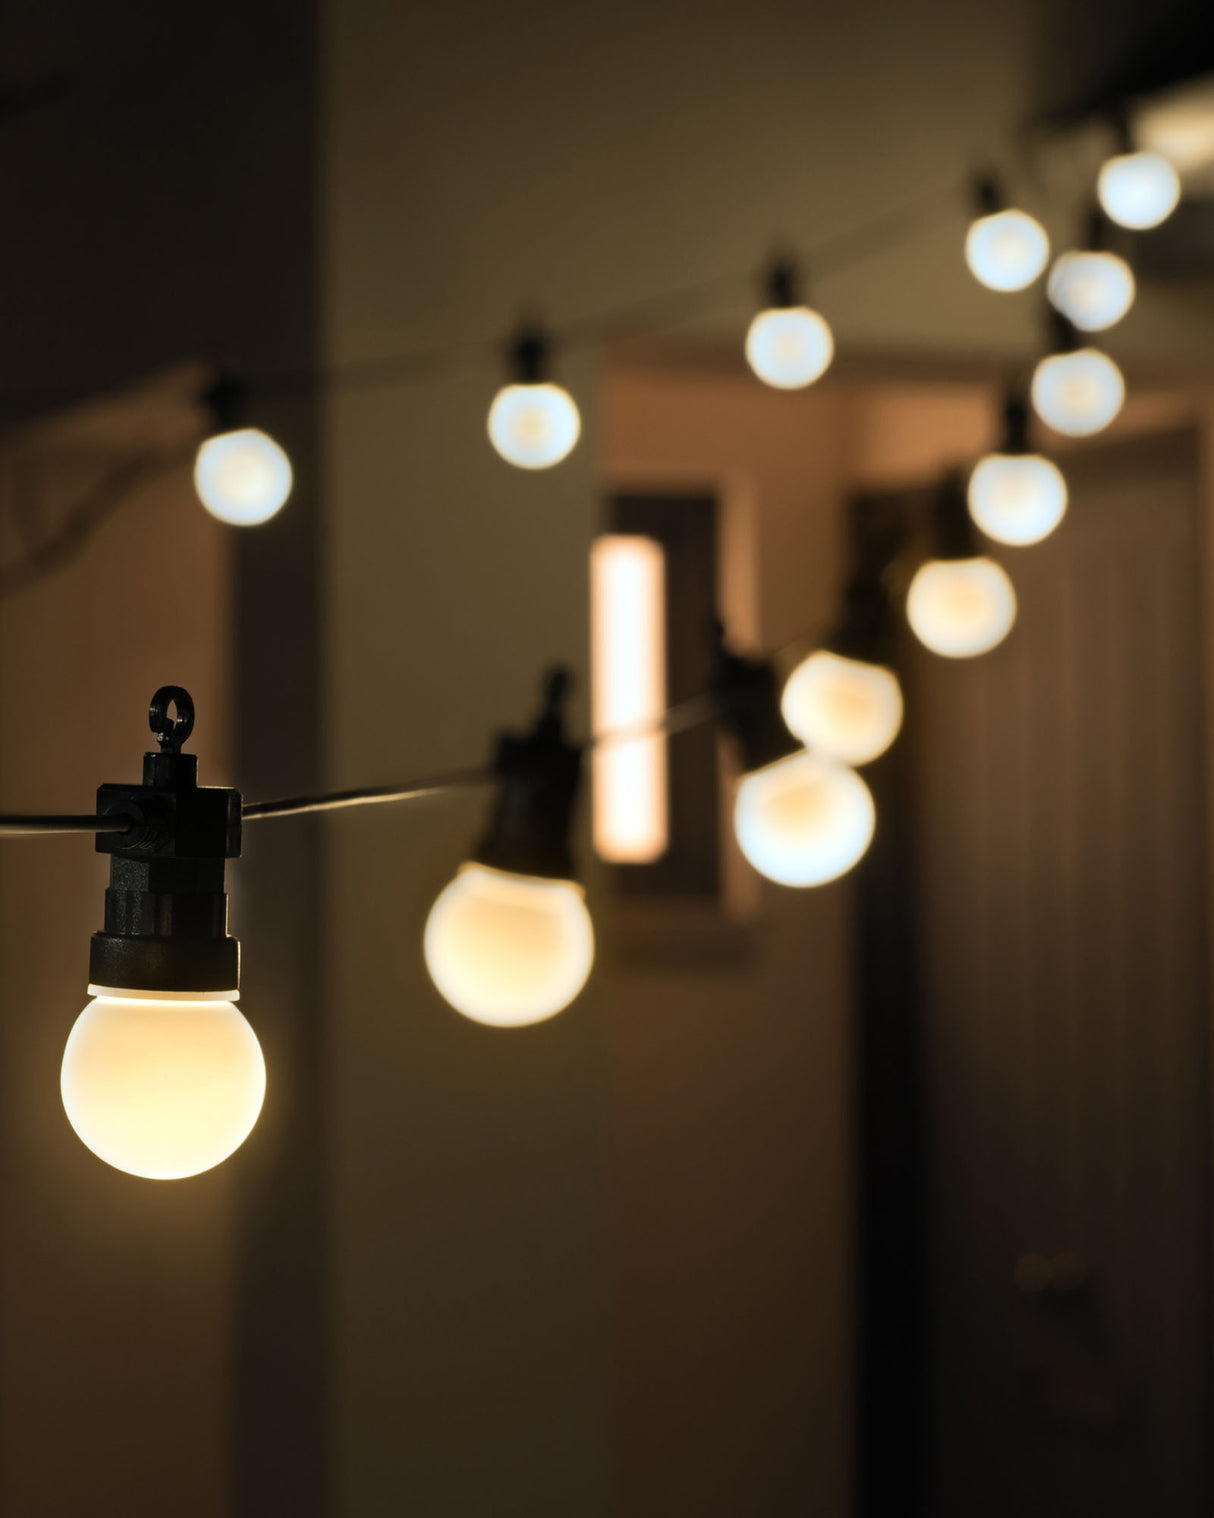 20 LED Connectable Matt Festoon Light String, Warm White, 7.7 m